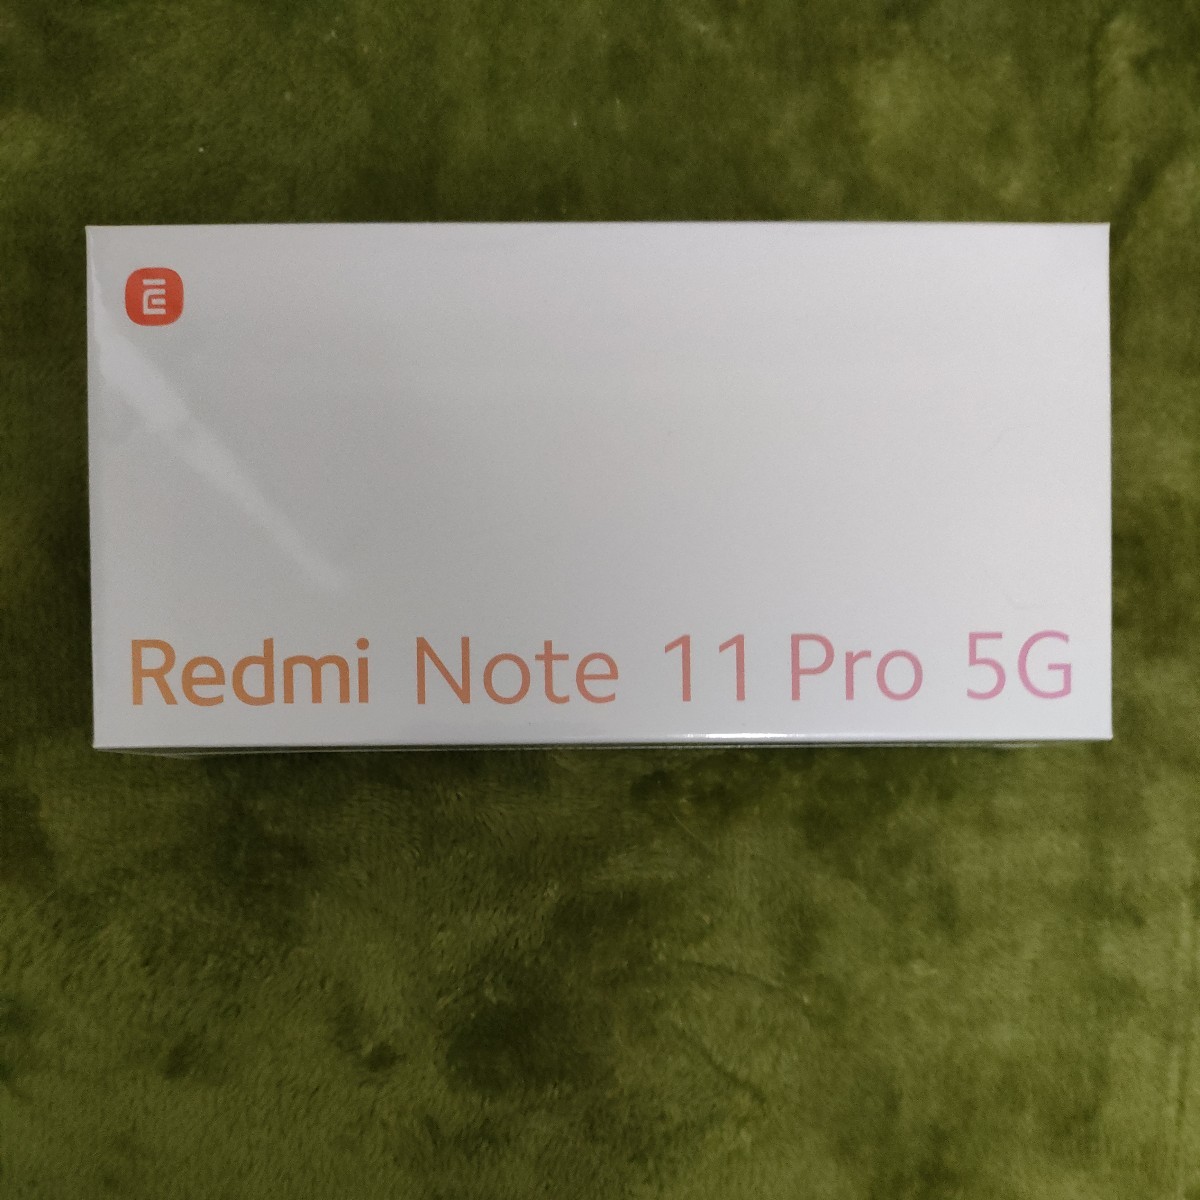 【ラッピング不可】 【未使用品未開封】 Xiaomi グラファイトグレー 楽天版 5G Pro 11 Note Redmi シャオミ Android